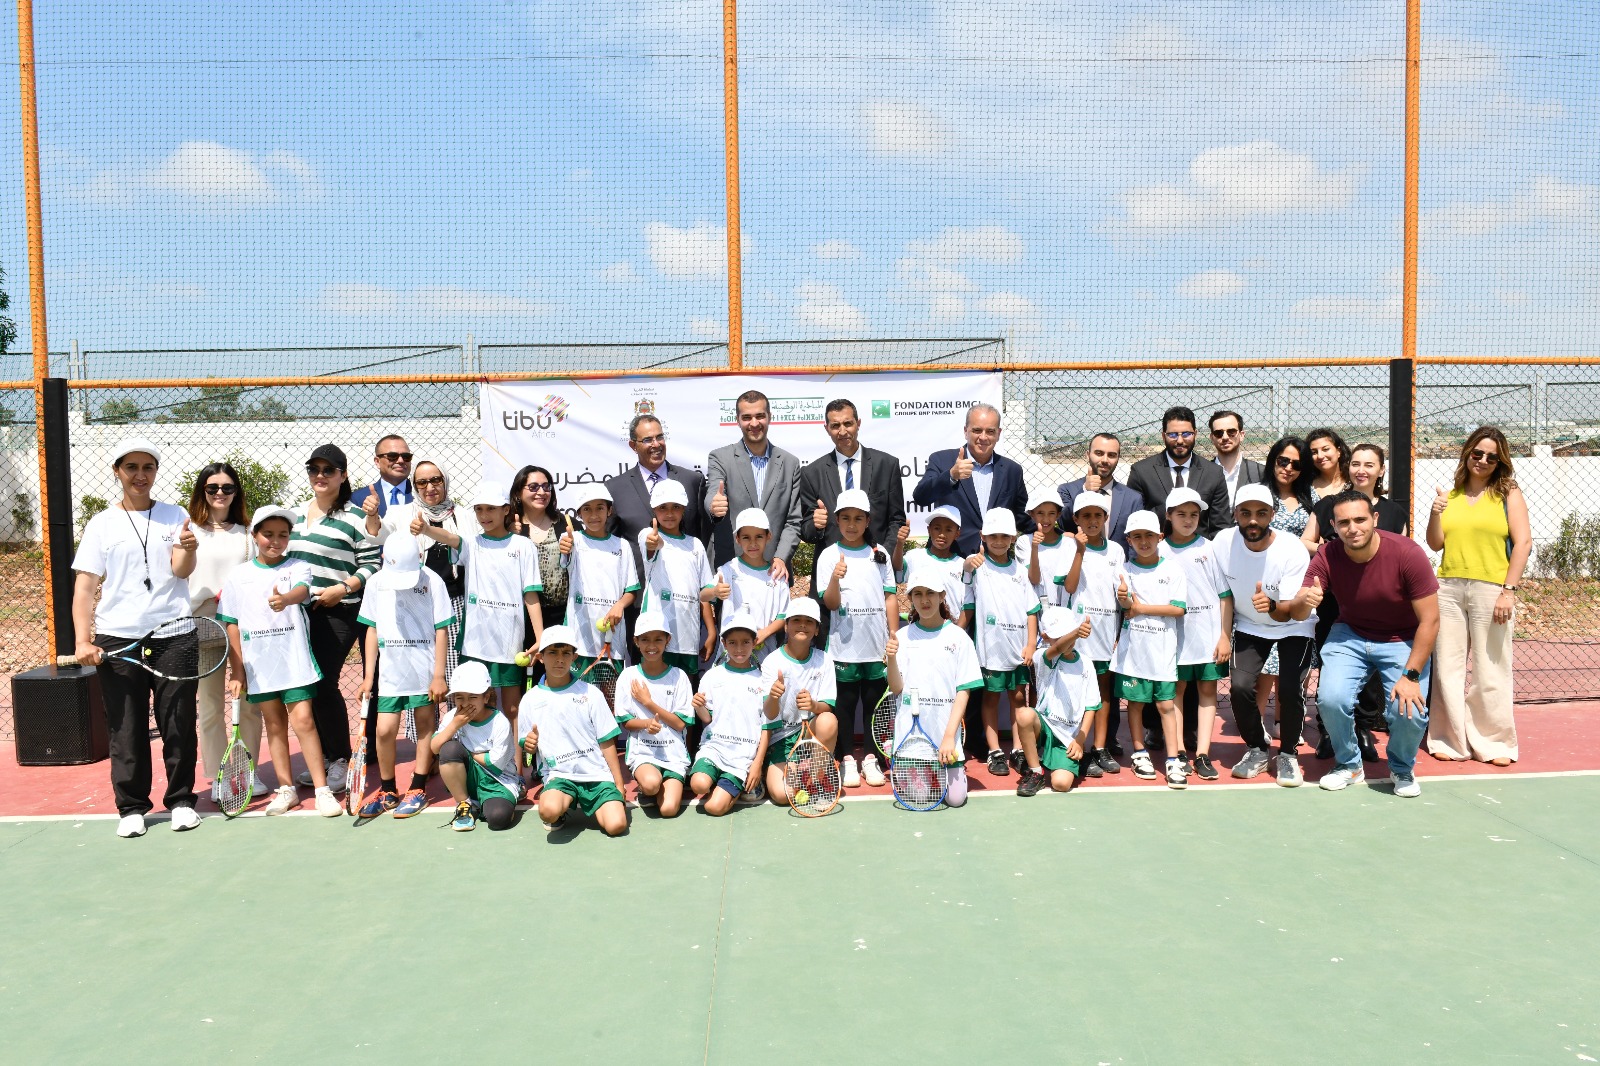 Tibu Africa et la Fondation BMCI s'unissent pour la promotion de l'éducation par le tennis à Ouled Azzouz